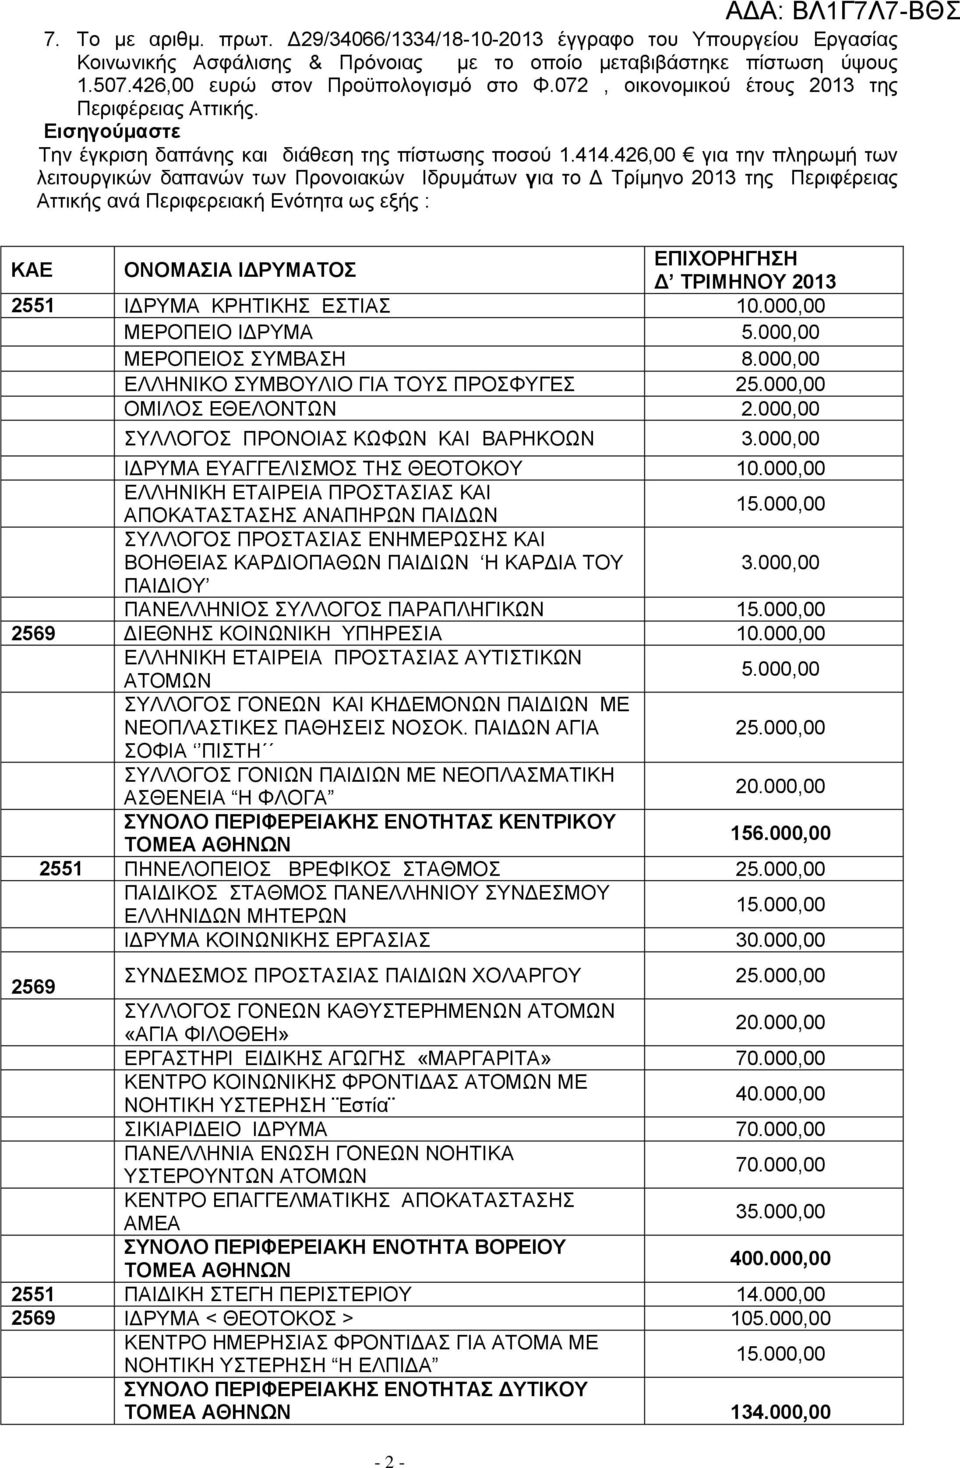 426,00 για την πληρωμή των λειτουργικών δαπανών των Προνοιακών Ιδρυμάτων για το Δ Τρίμηνο 2013 της Περιφέρειας Αττικής ανά Περιφερειακή Ενότητα ως εξής : ΚΑΕ ΟΝΟΜΑΣΙΑ ΙΔΡΥΜΑΤΟΣ ΕΠΙΧΟΡΗΓΗΣΗ Δ ΤΡΙΜΗΝΟΥ